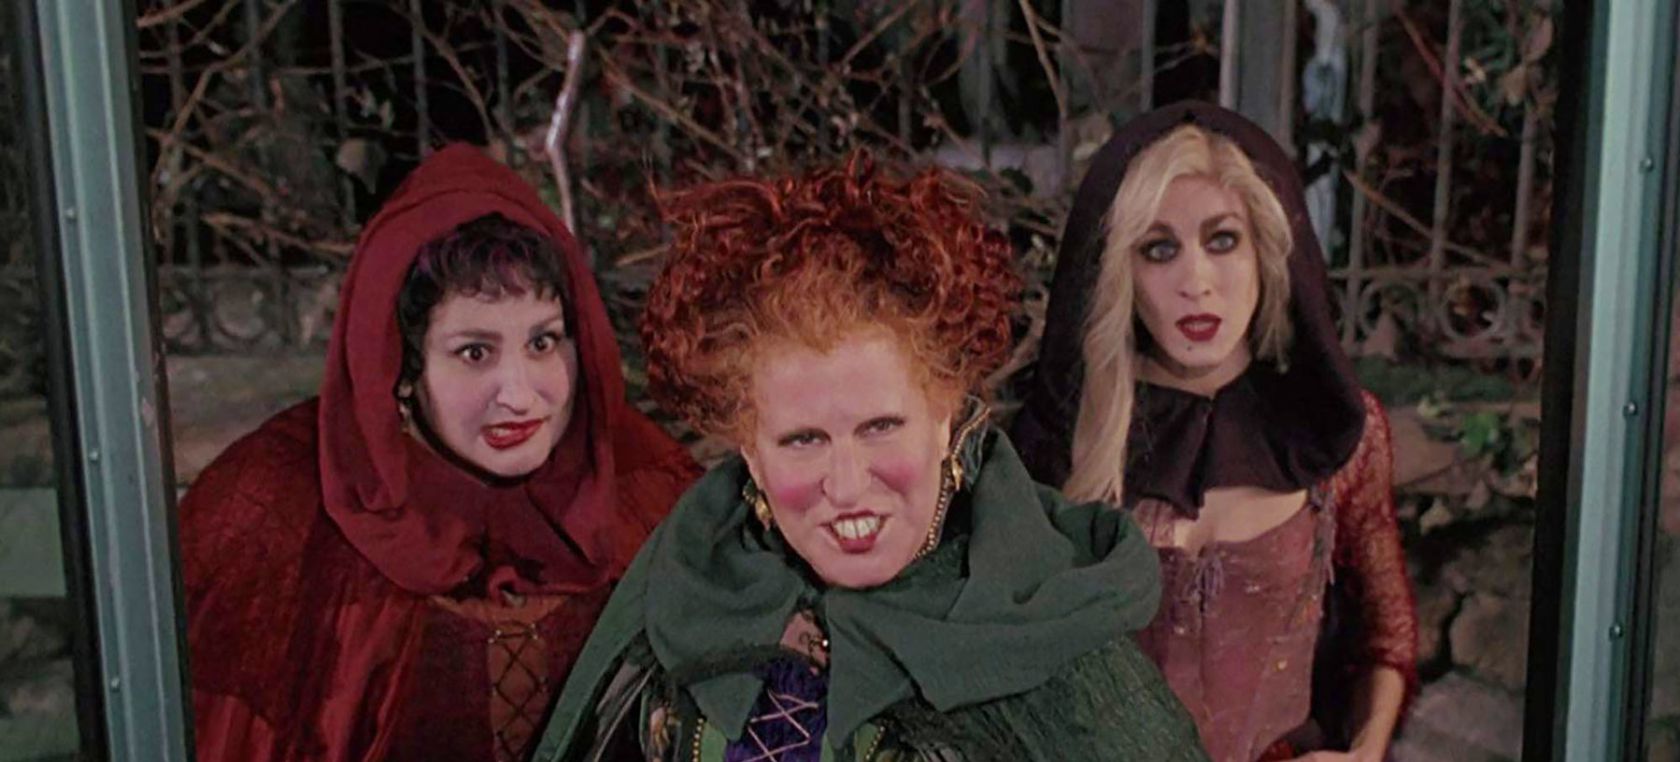 Siete películas sobre brujas para ver este Halloween | Cine y Televisión |  LOS40